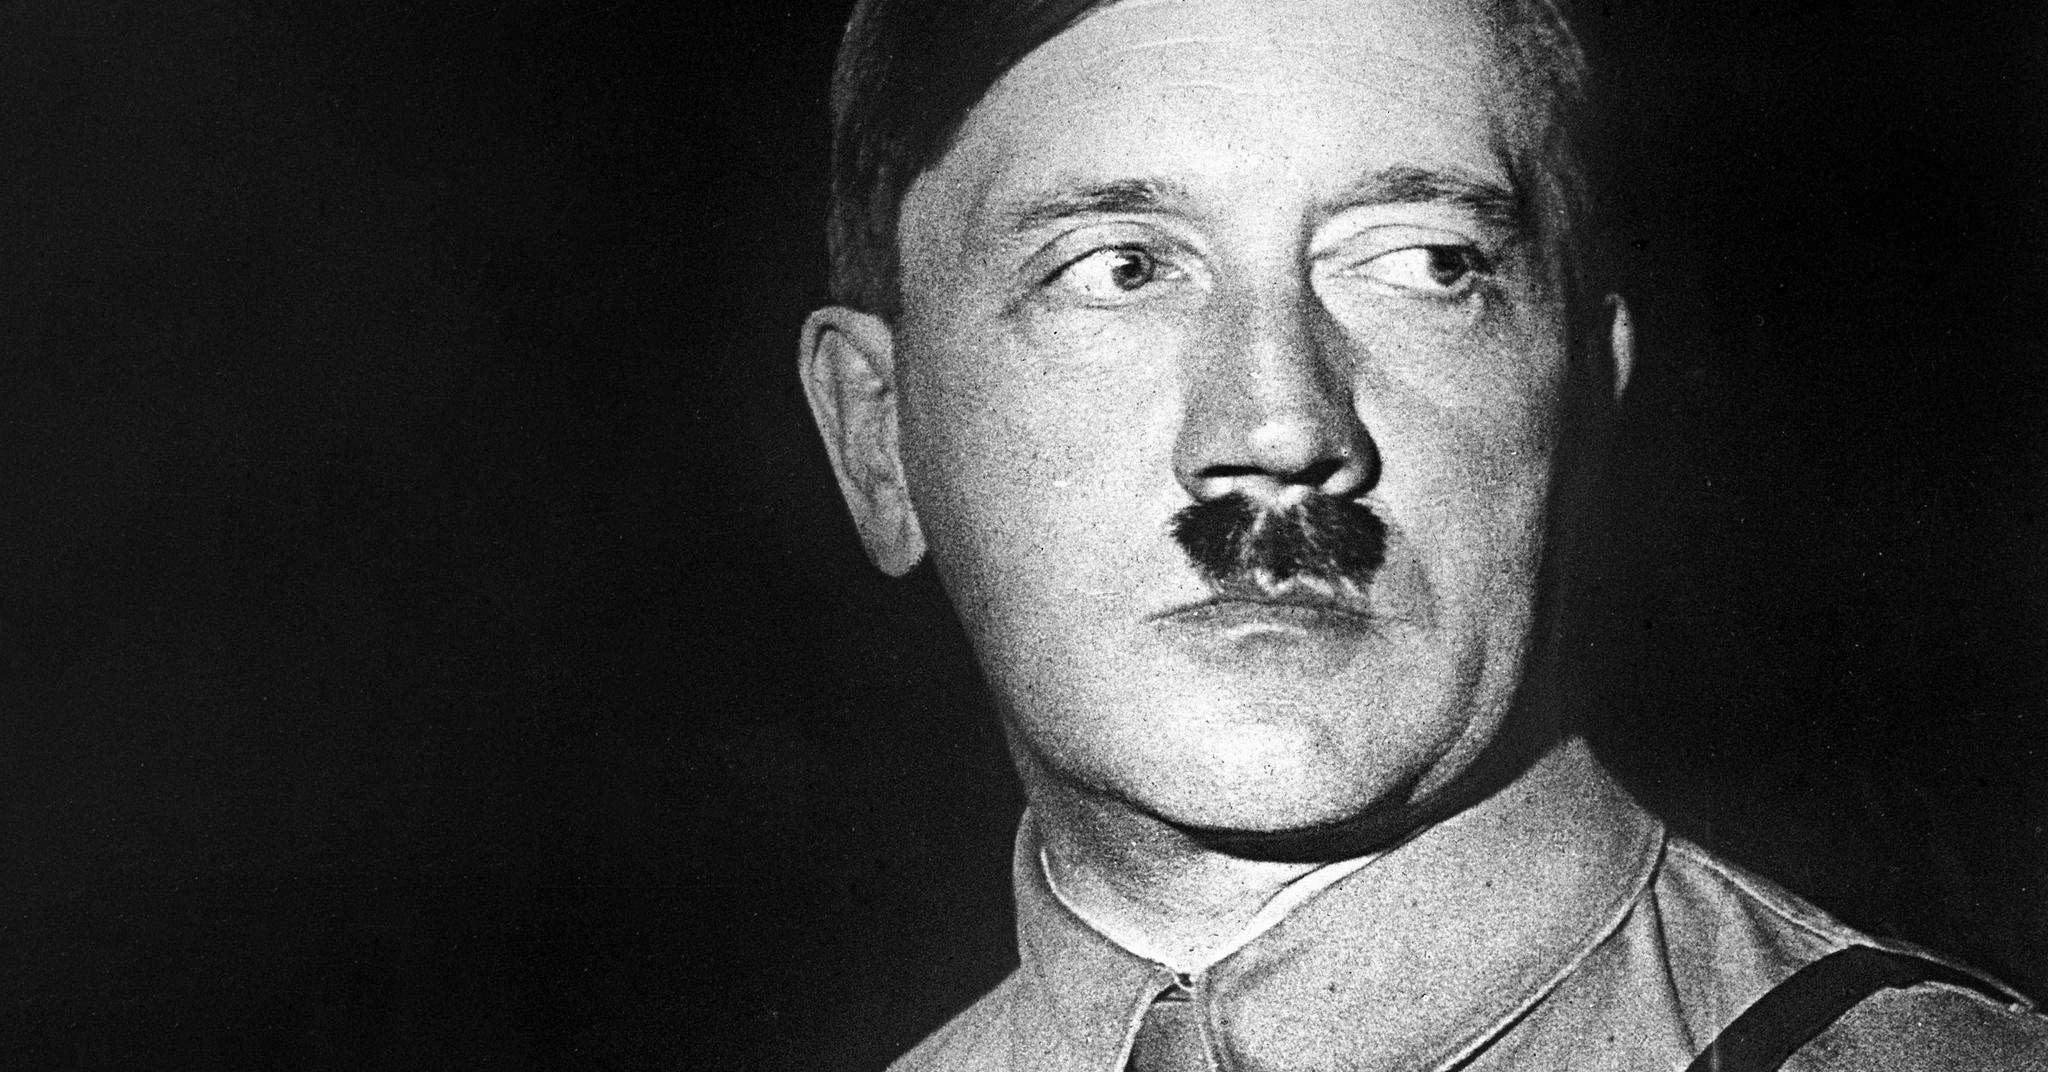 Det første intervjuet med Adolf Hitler